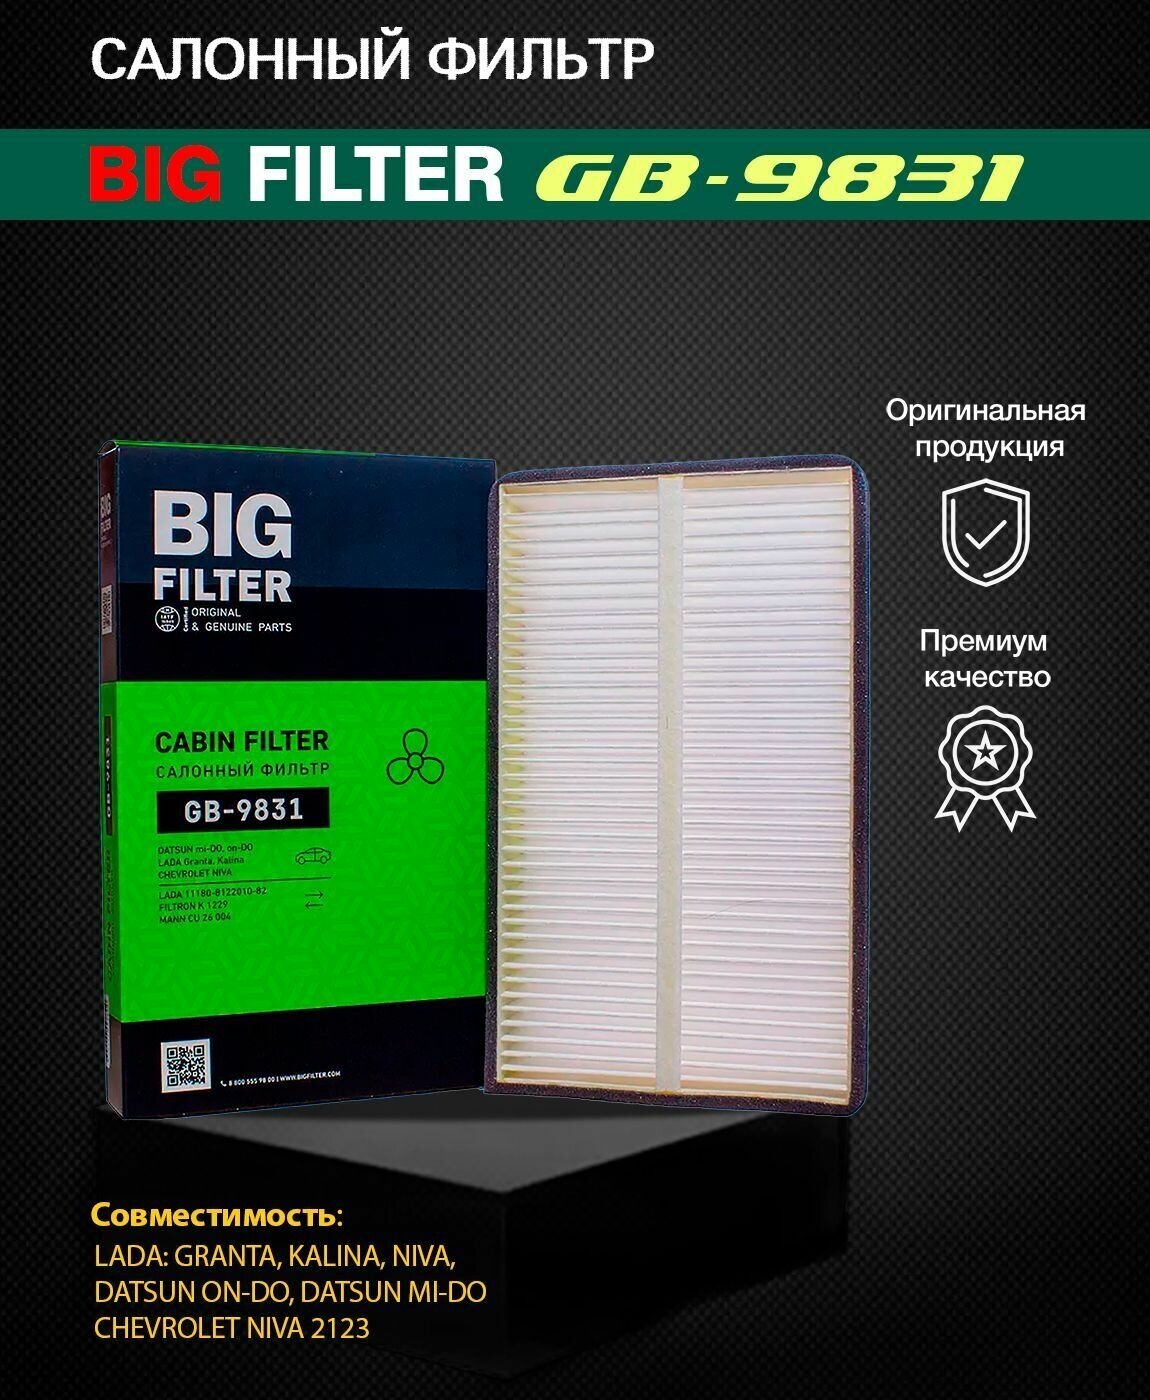 Фильтр BIG FILTER GB-9831